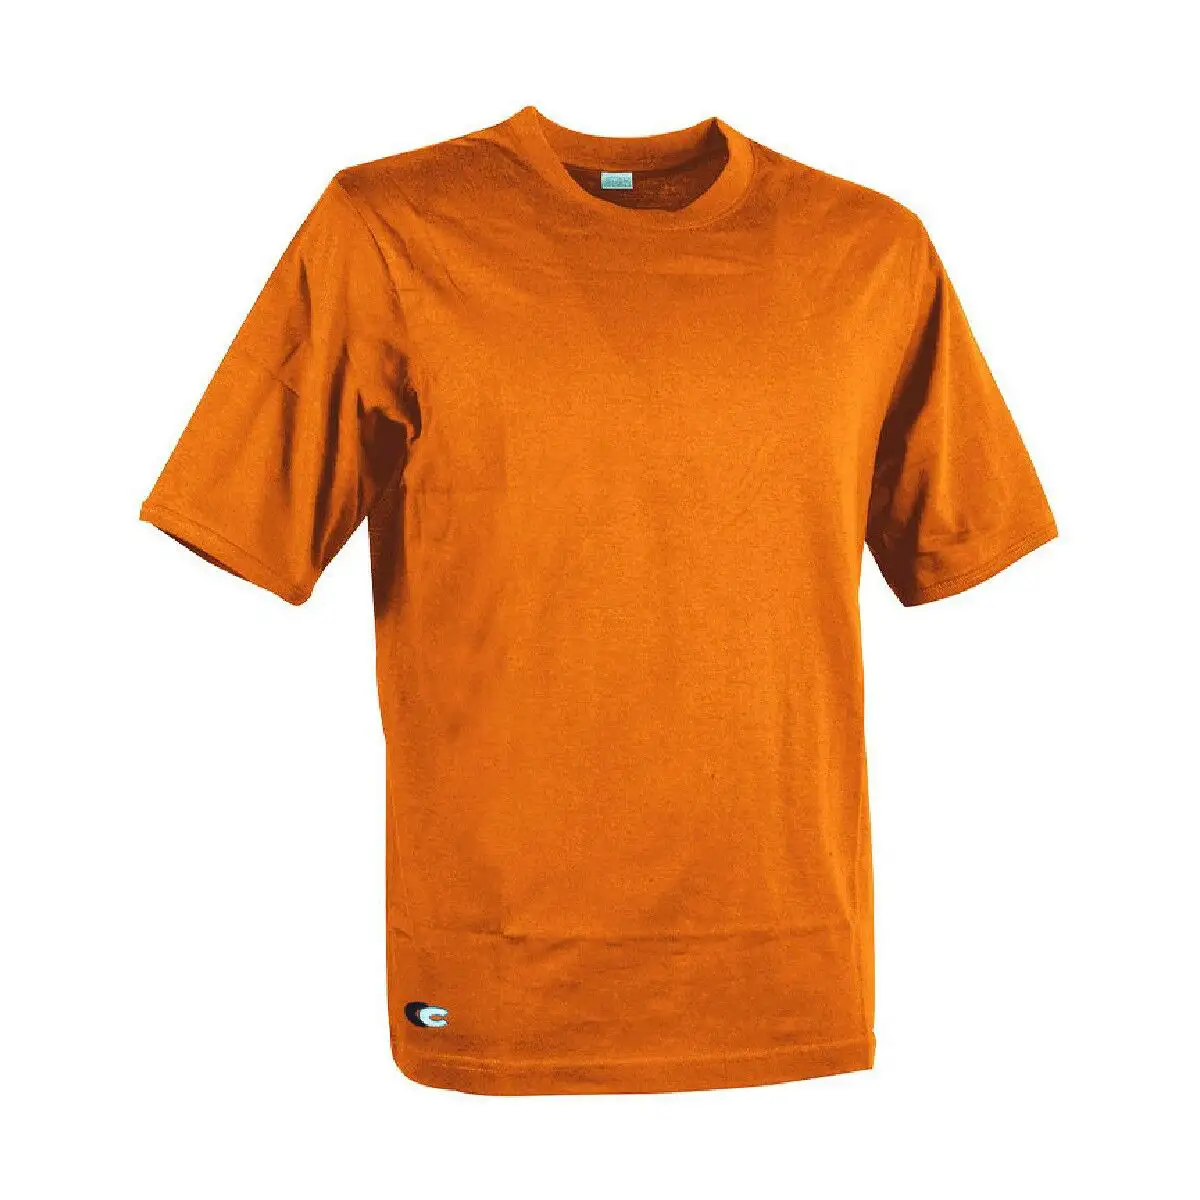 T shirt a manches courtes homme cofra zanzibar orange_8591. DIAYTAR SENEGAL - Où Choisir est un Acte d'Amour pour le Sénégal. Explorez notre boutique en ligne et choisissez des articles qui célèbrent la culture et l'artisanat du pays.